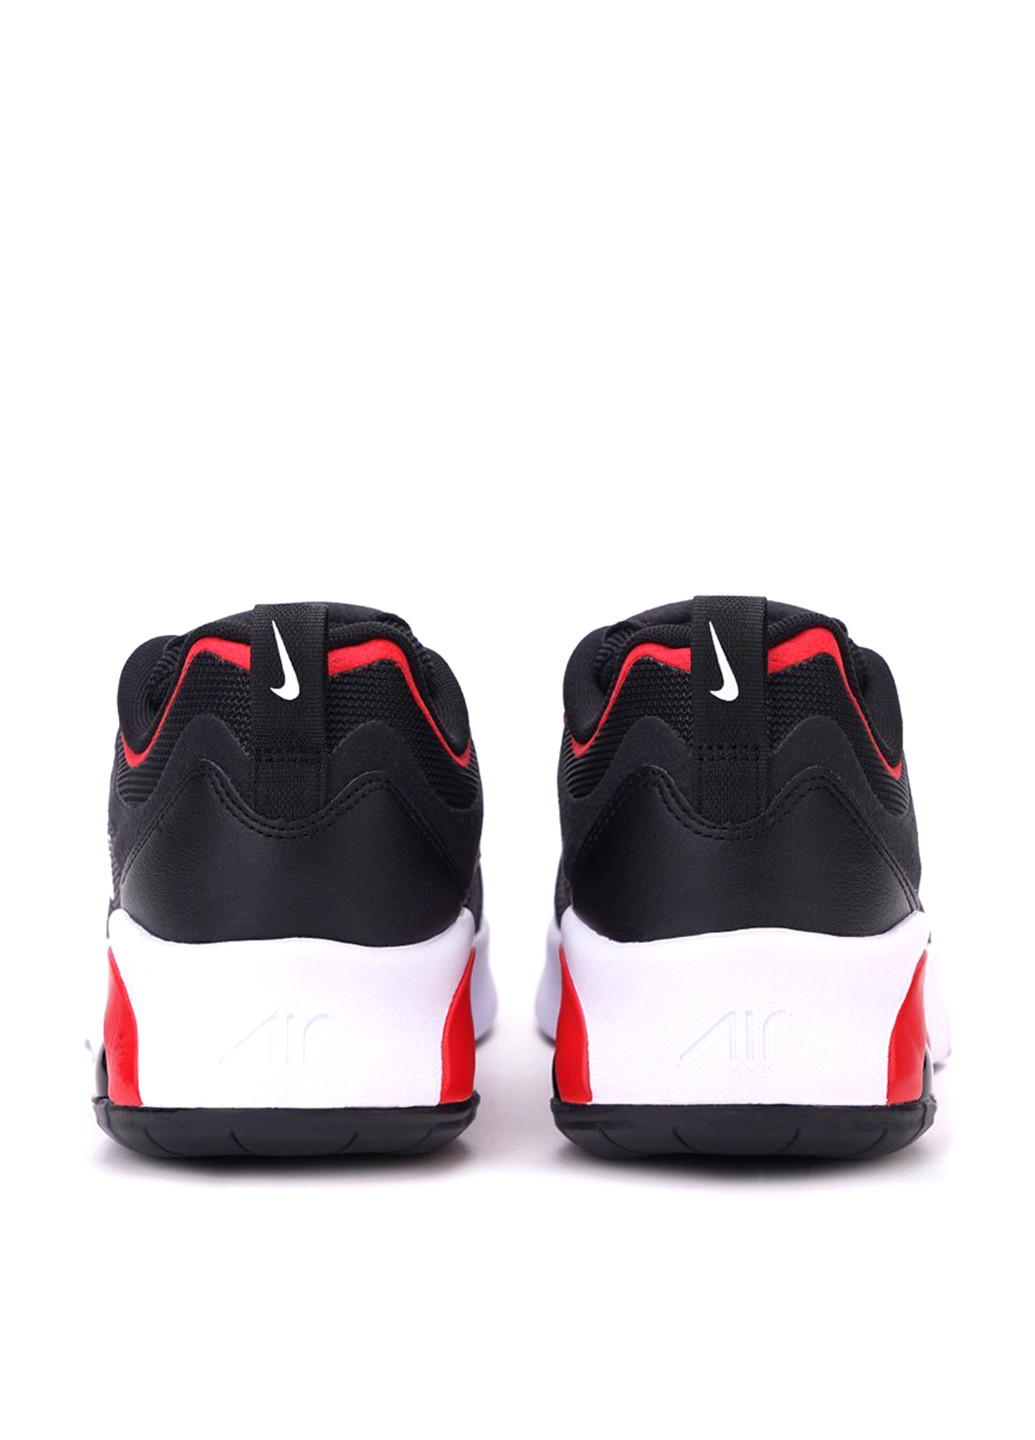 Черные всесезон кроссовки Nike Air Max 200 Bg